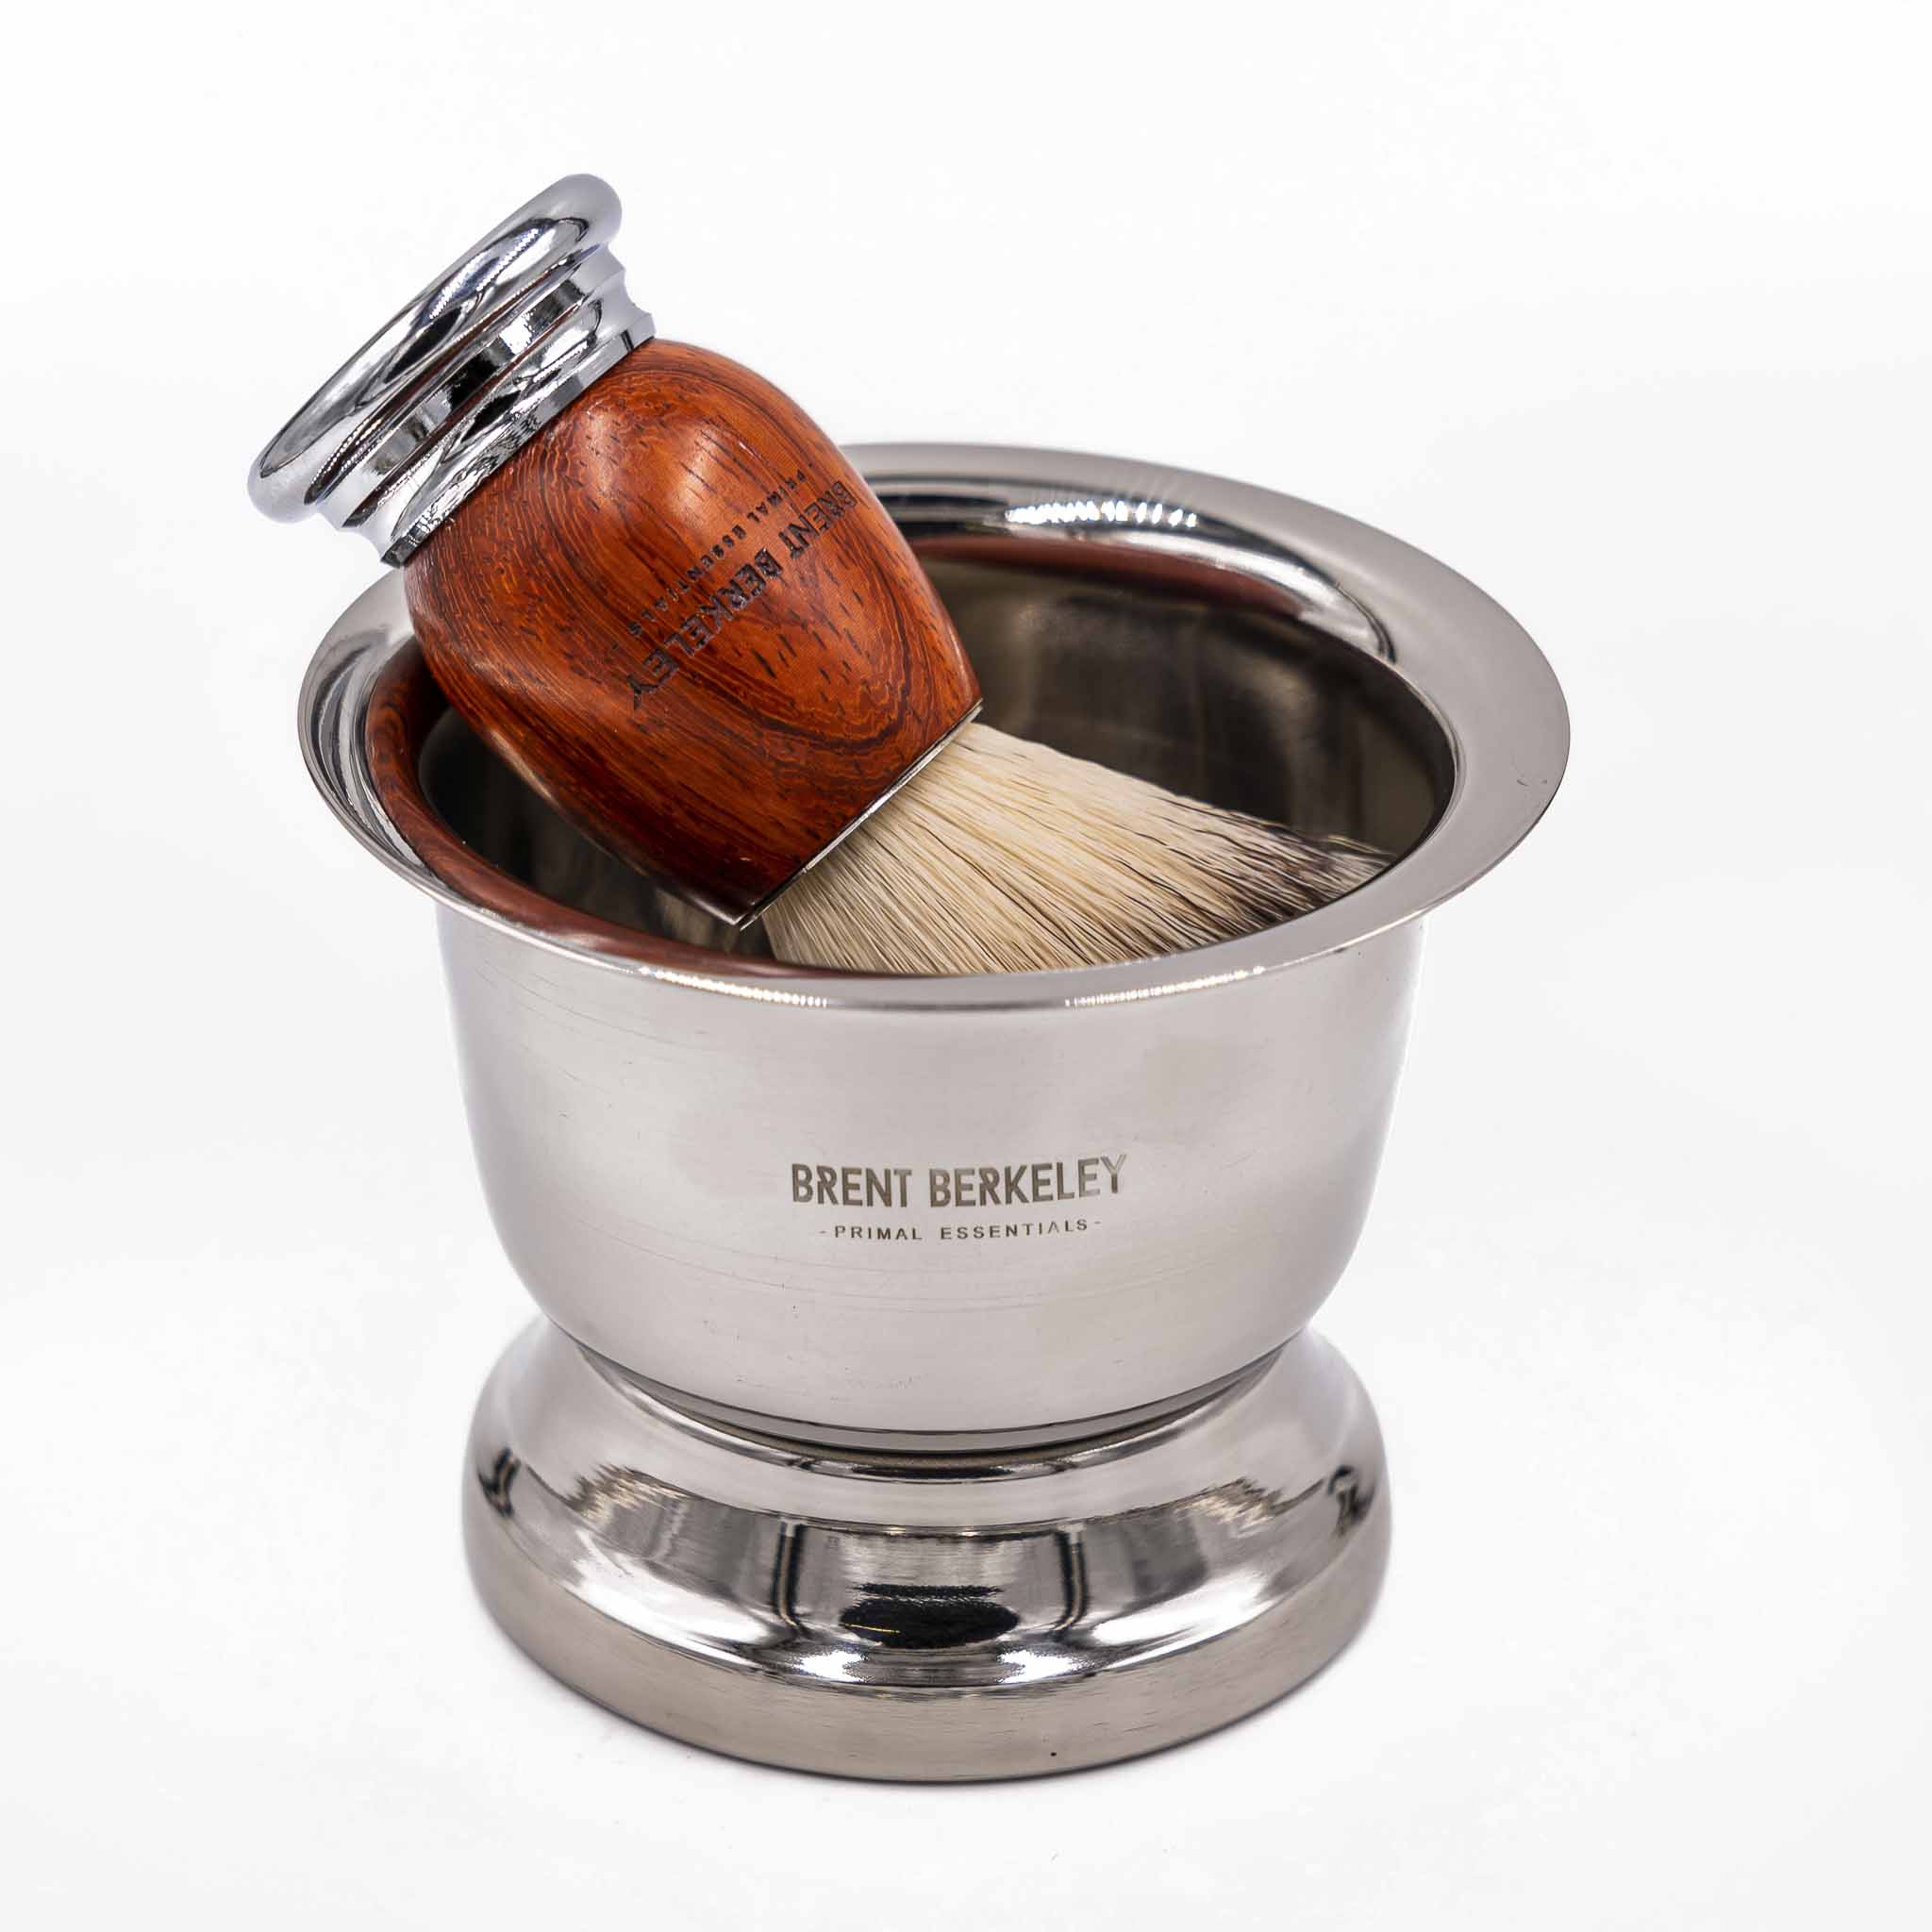 Brent Berkeley shaving mug / shaving bowl strainless steel